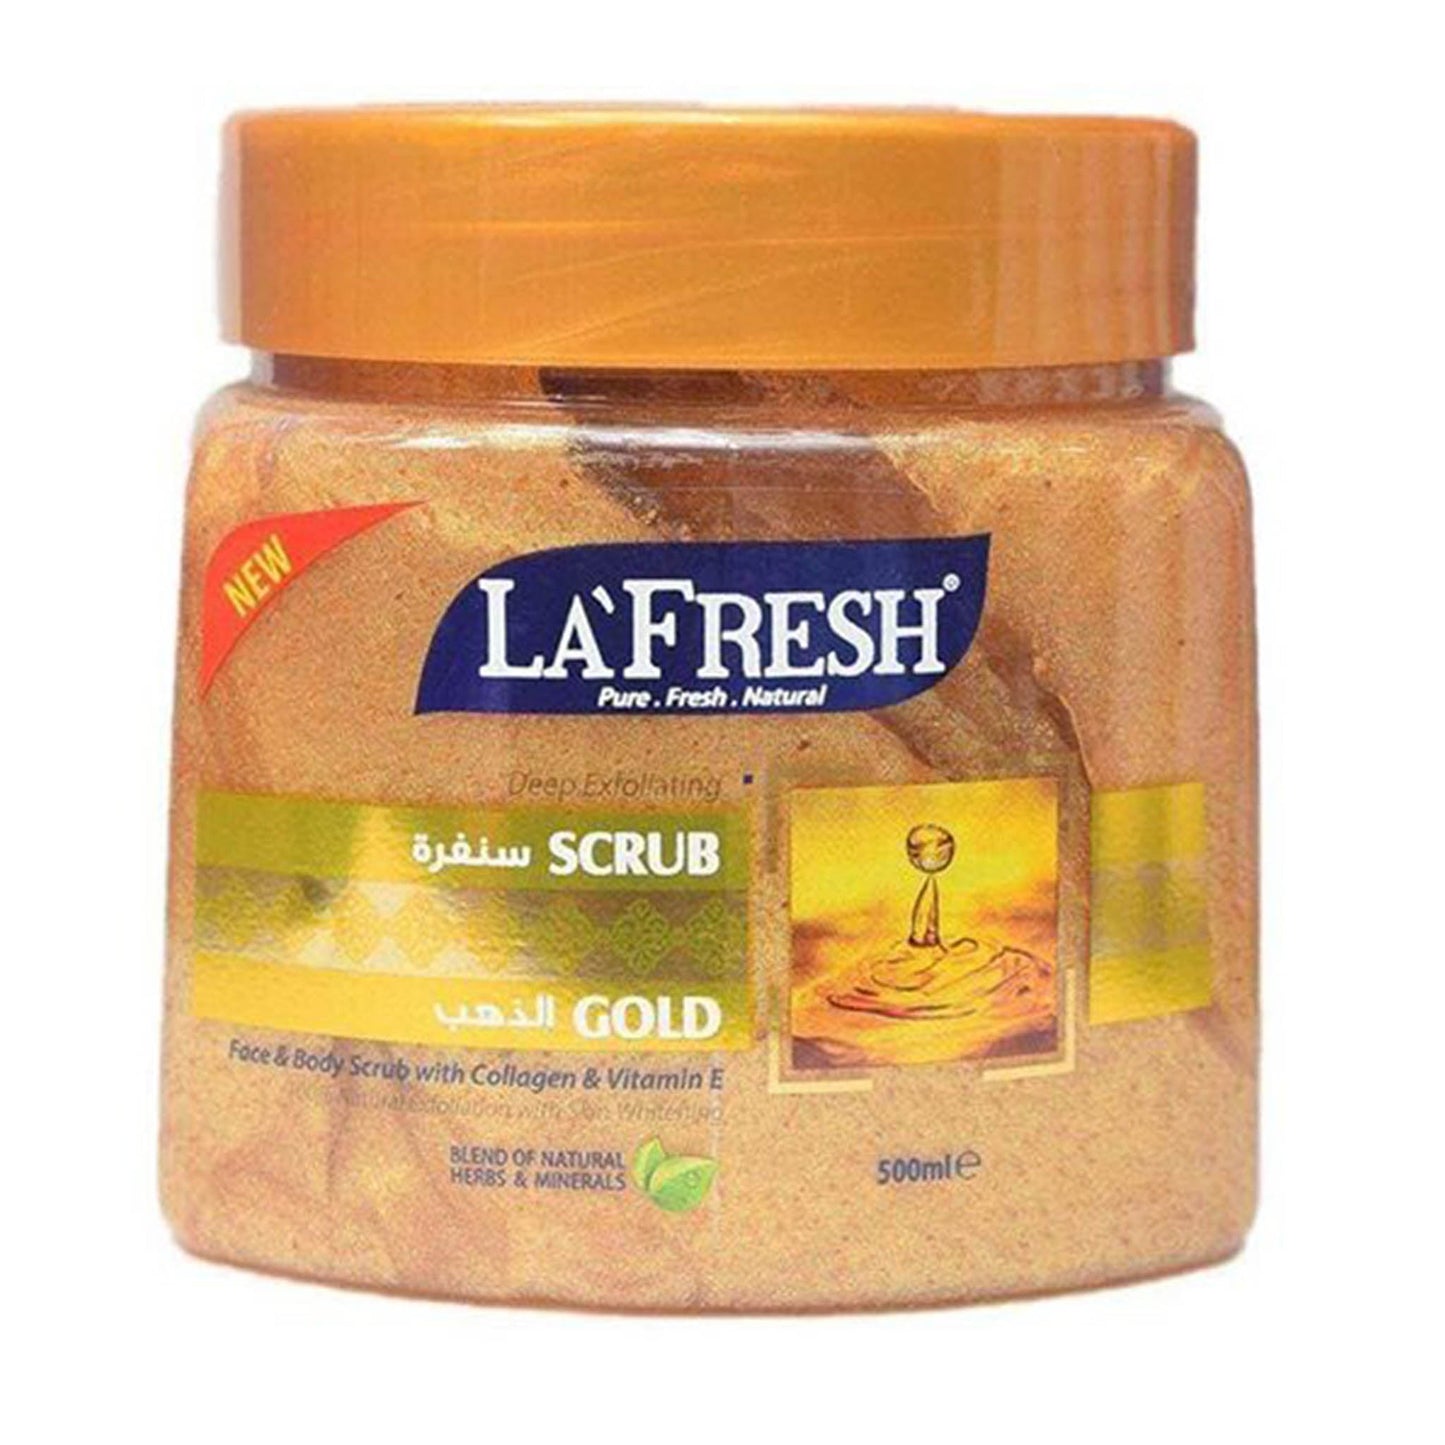 La Fresh - Deep Exfoliating Gold Face & Body Scrub With Collagen & Vitamin E - 500ml